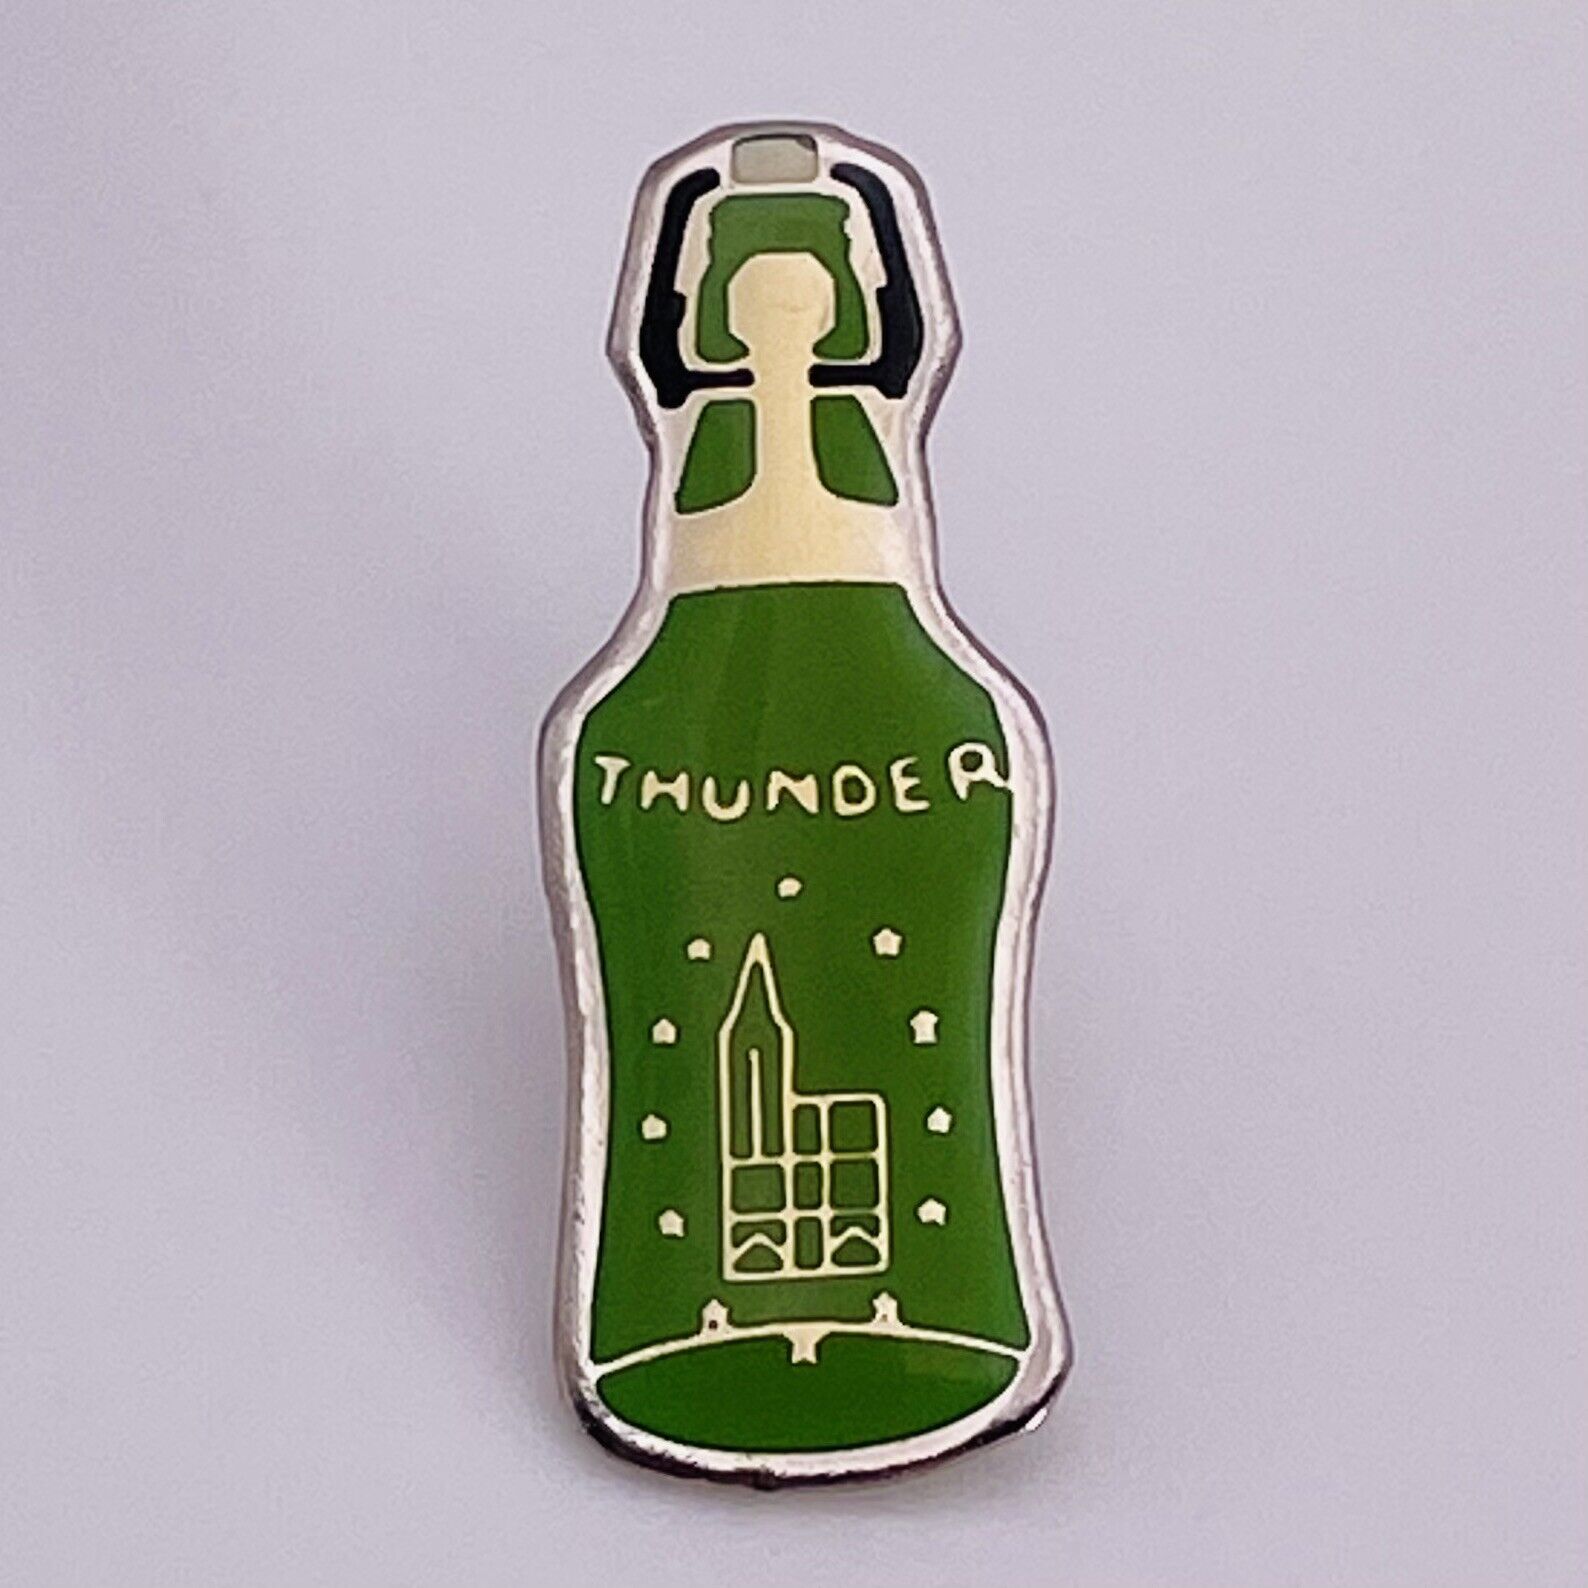 Imported Thunder Flip-Top Beer Enamel Pin - Lapel - Bartender Bling - Nice